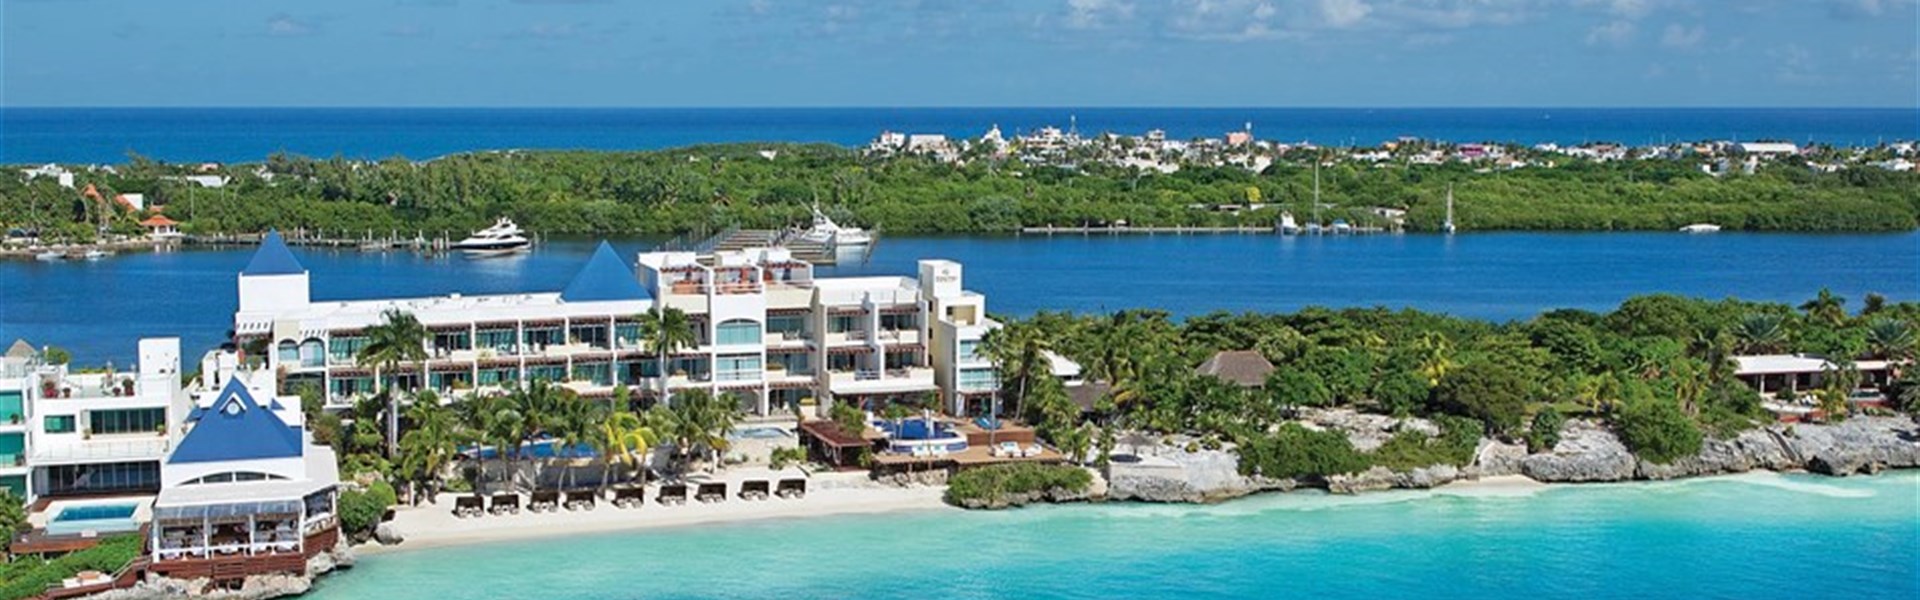 Marco Polo - Zoetry Villa Rolandi Isla Mujeres Cancun - 